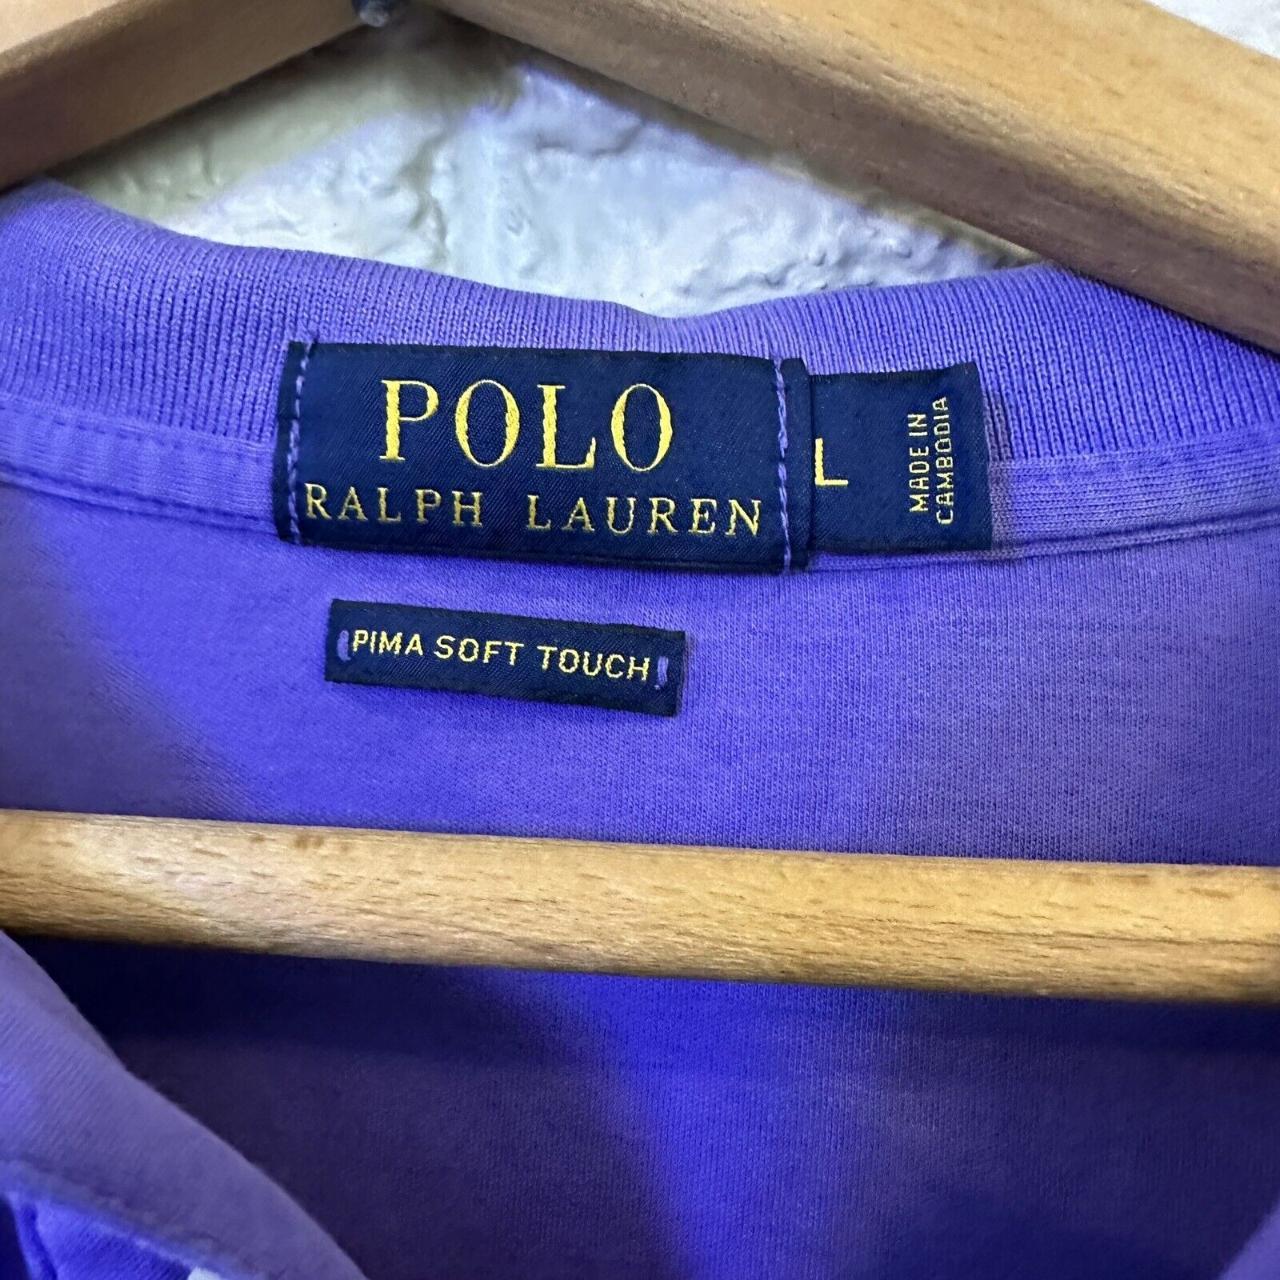 Polo Rlaph Lauren Mens Size L Pima Soft Touch Polo... - Depop